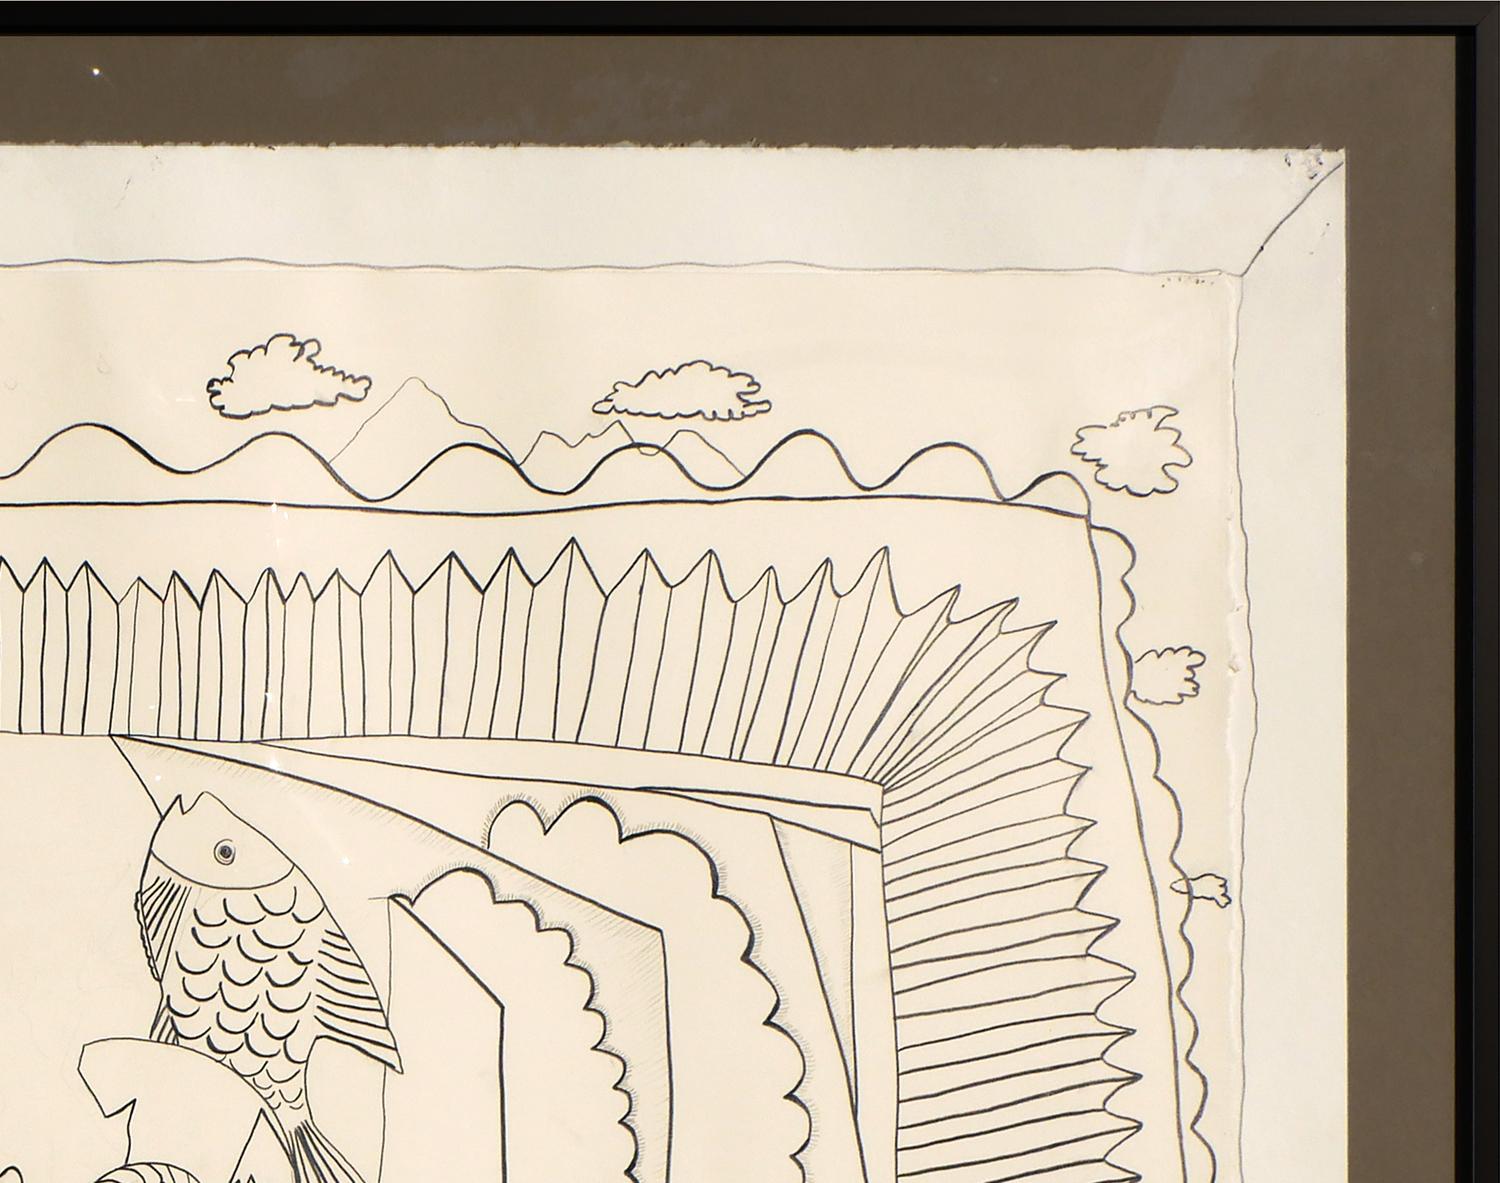 Schwarz-weiße abstrakte figurative Tuschezeichnung von Floyd Newsum. Das Werk zeigt eine surreale, pastorale Bauernhofszene, in der zwei weibliche Figuren und verschiedene Tiere in der Landschaft zu schweben scheinen. Signiert und datiert in der